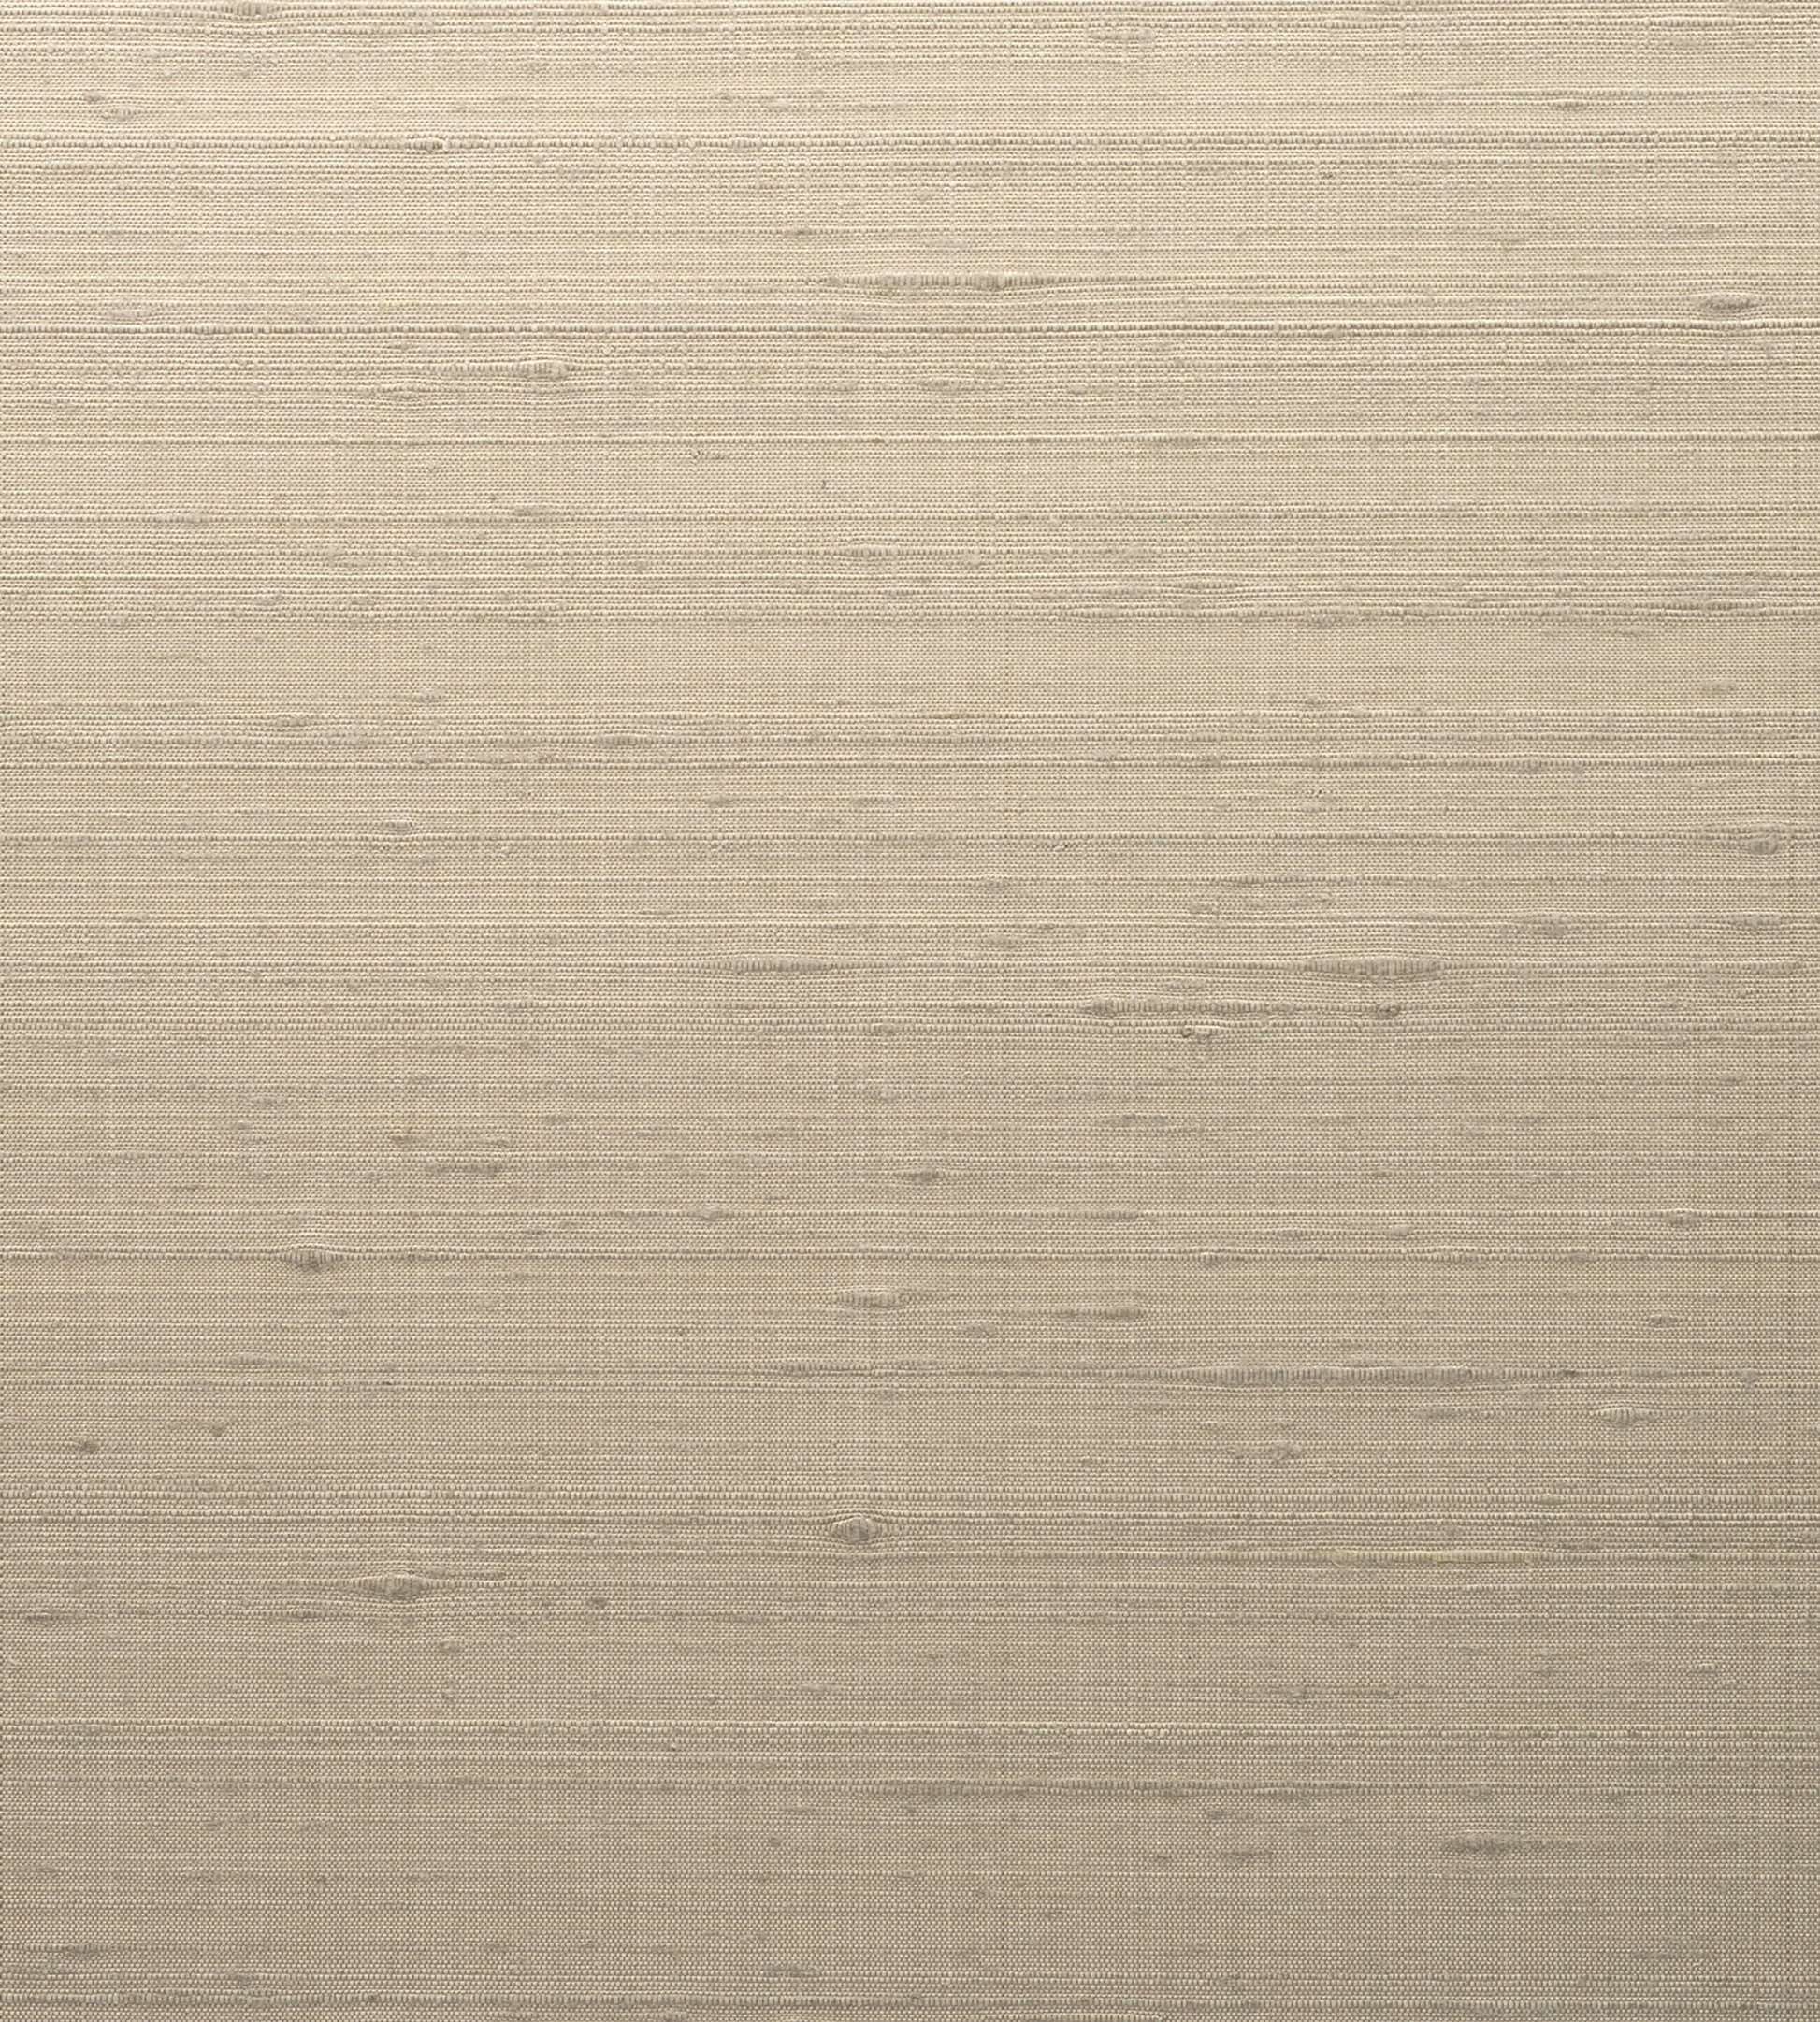 Purchase Scalamandre Wallpaper Pattern Wtt651332 Name Sagar Silk Oyster Shell Plain Wallpaper